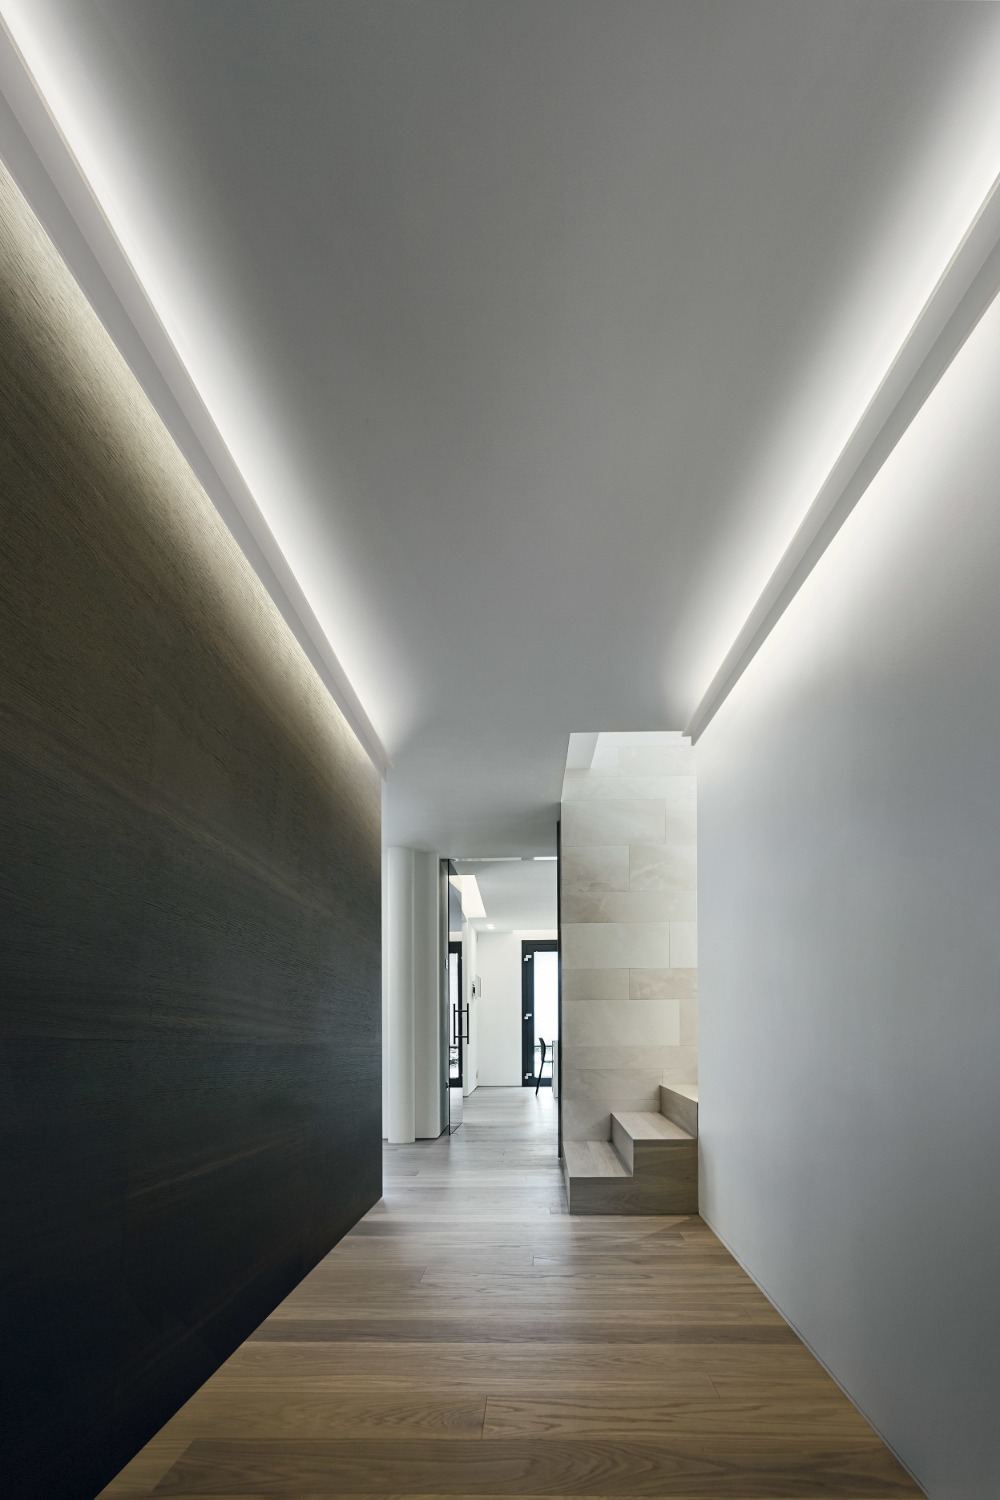 design minimalista e iluminação indireta no corredor no teto